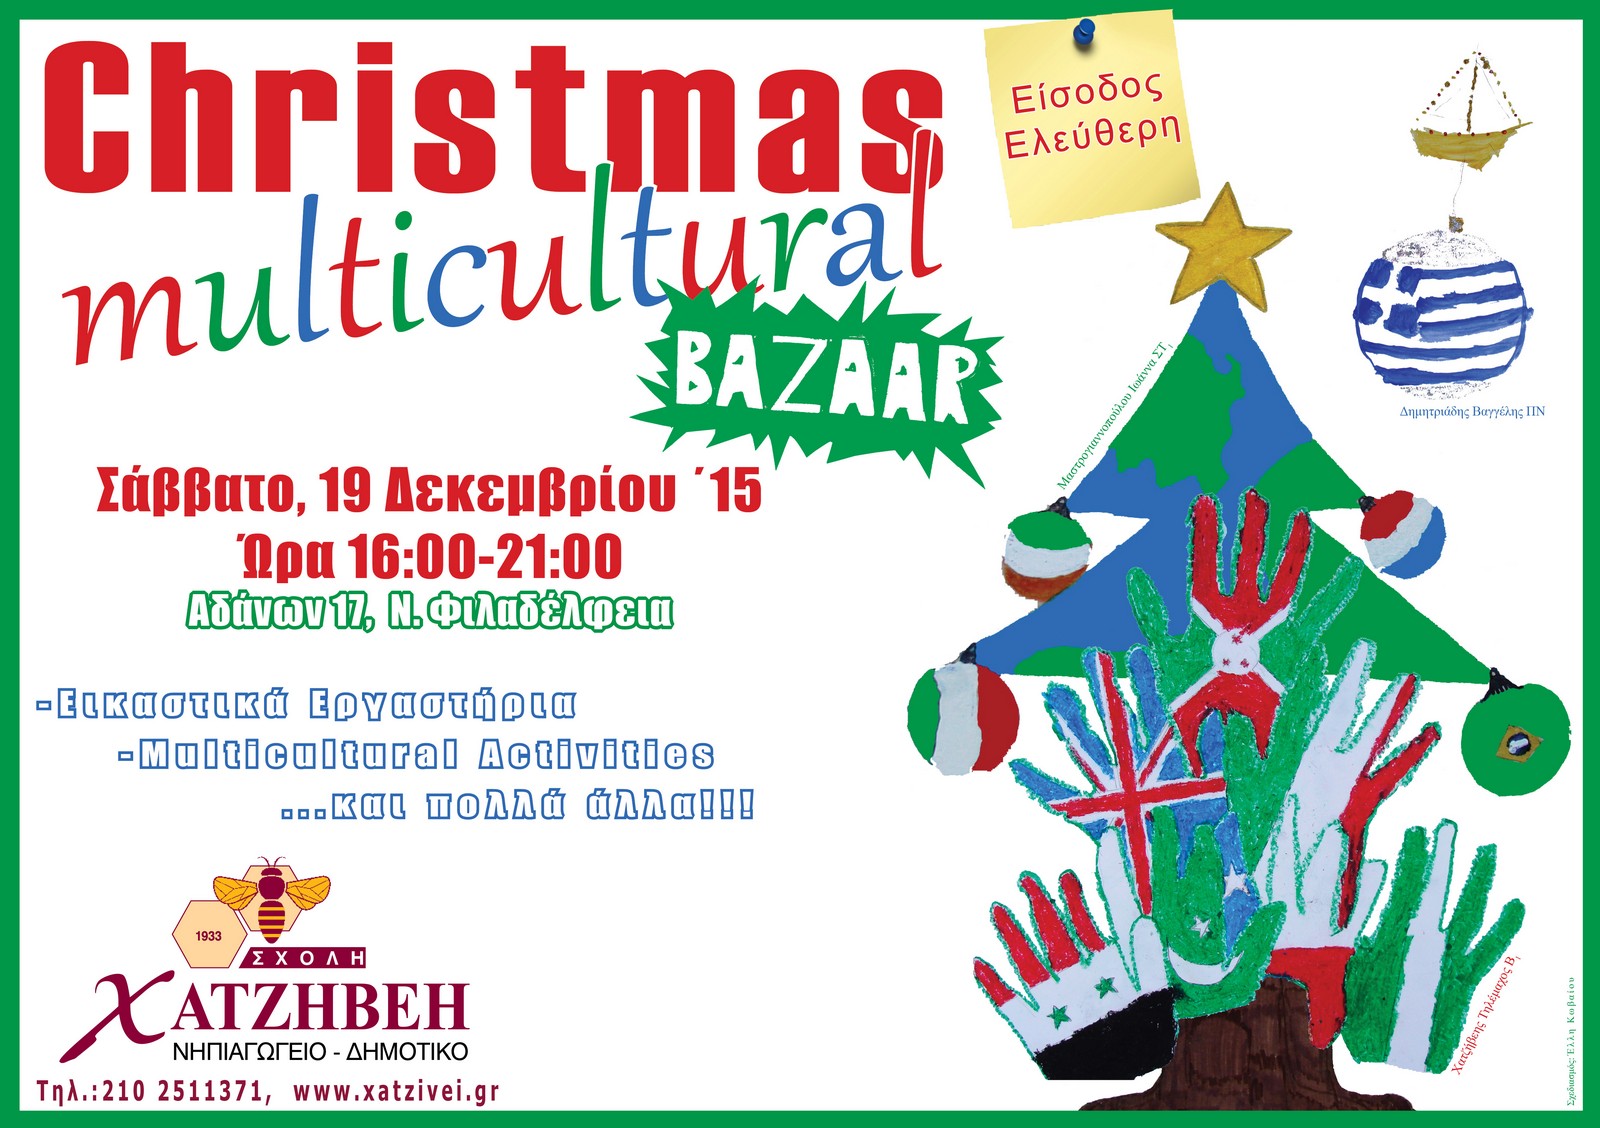 Σχολή Χατζήβεη – CHRISTMAS Multicultural BAZAAR